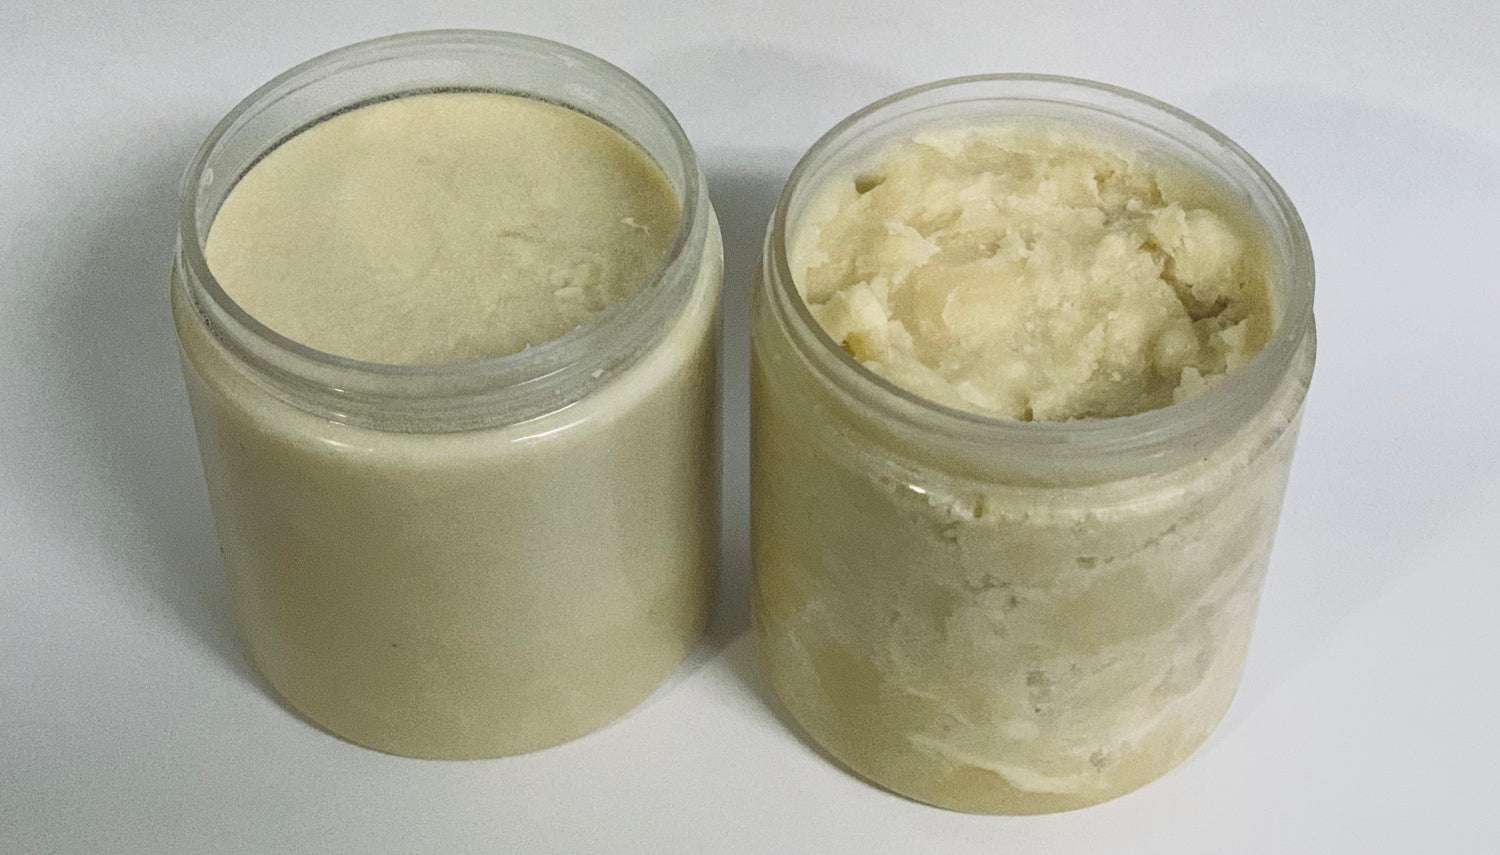 African Raw Shea Butter In a Butter Jar